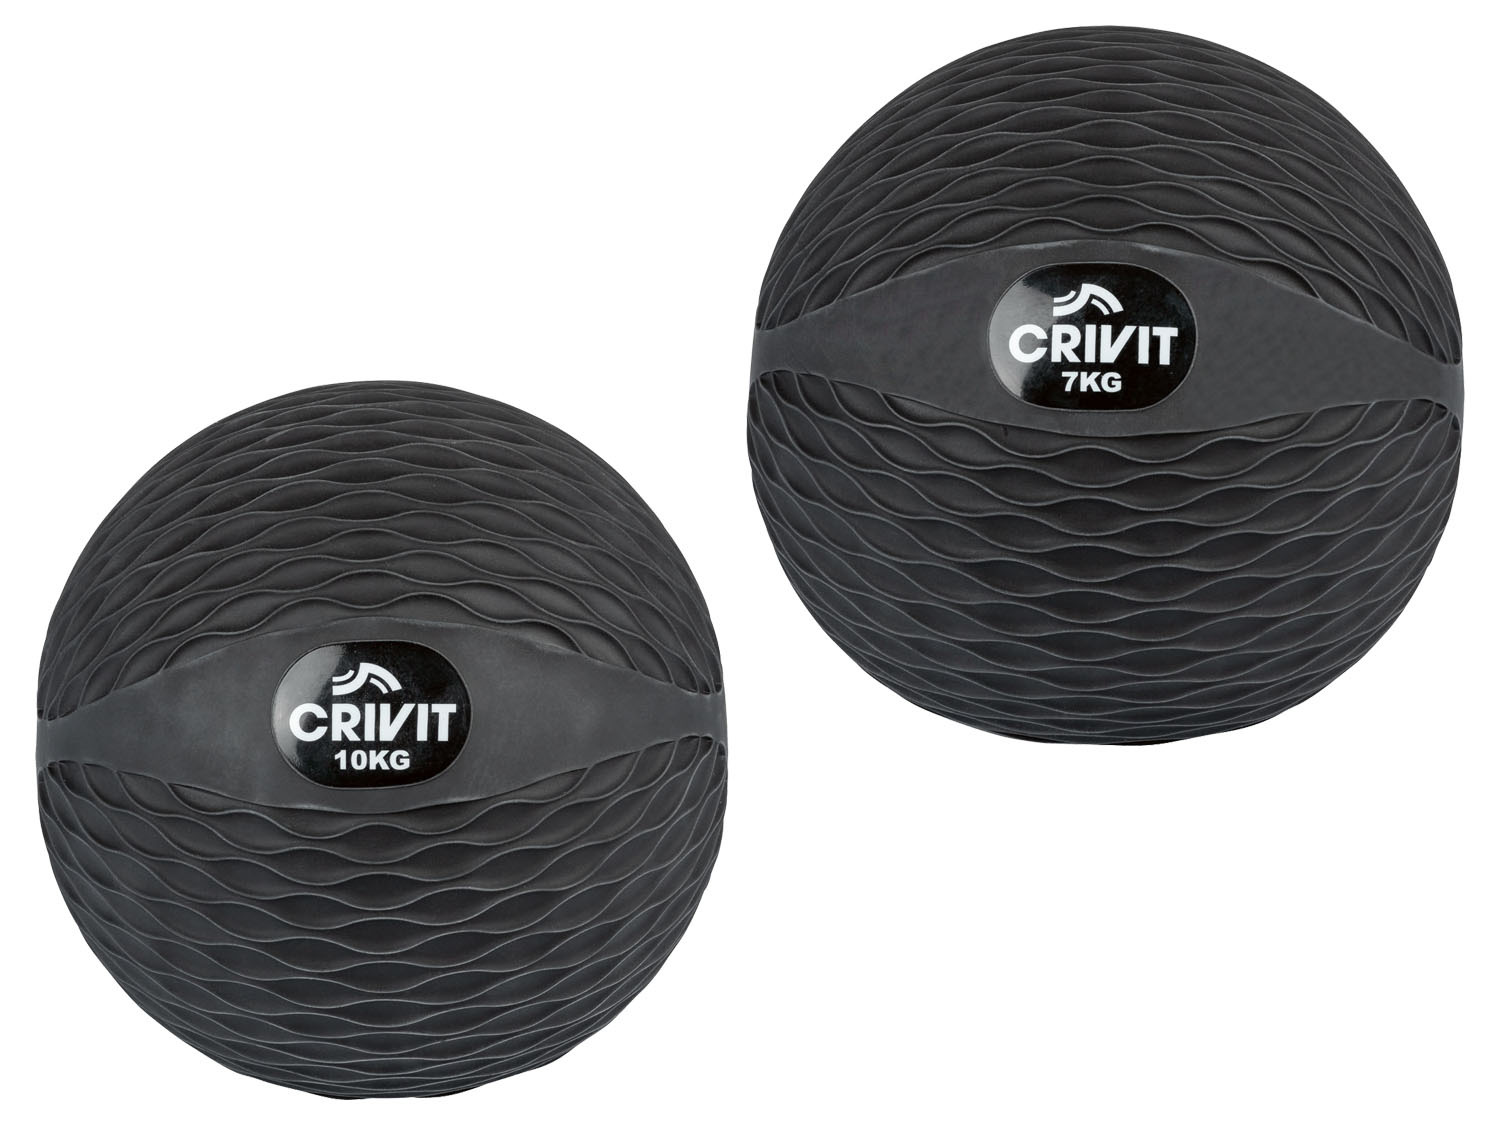 Schelden Paradox levering CRIVIT Slam ball, 7 kg of 10 kg online kopen op Lidl.be